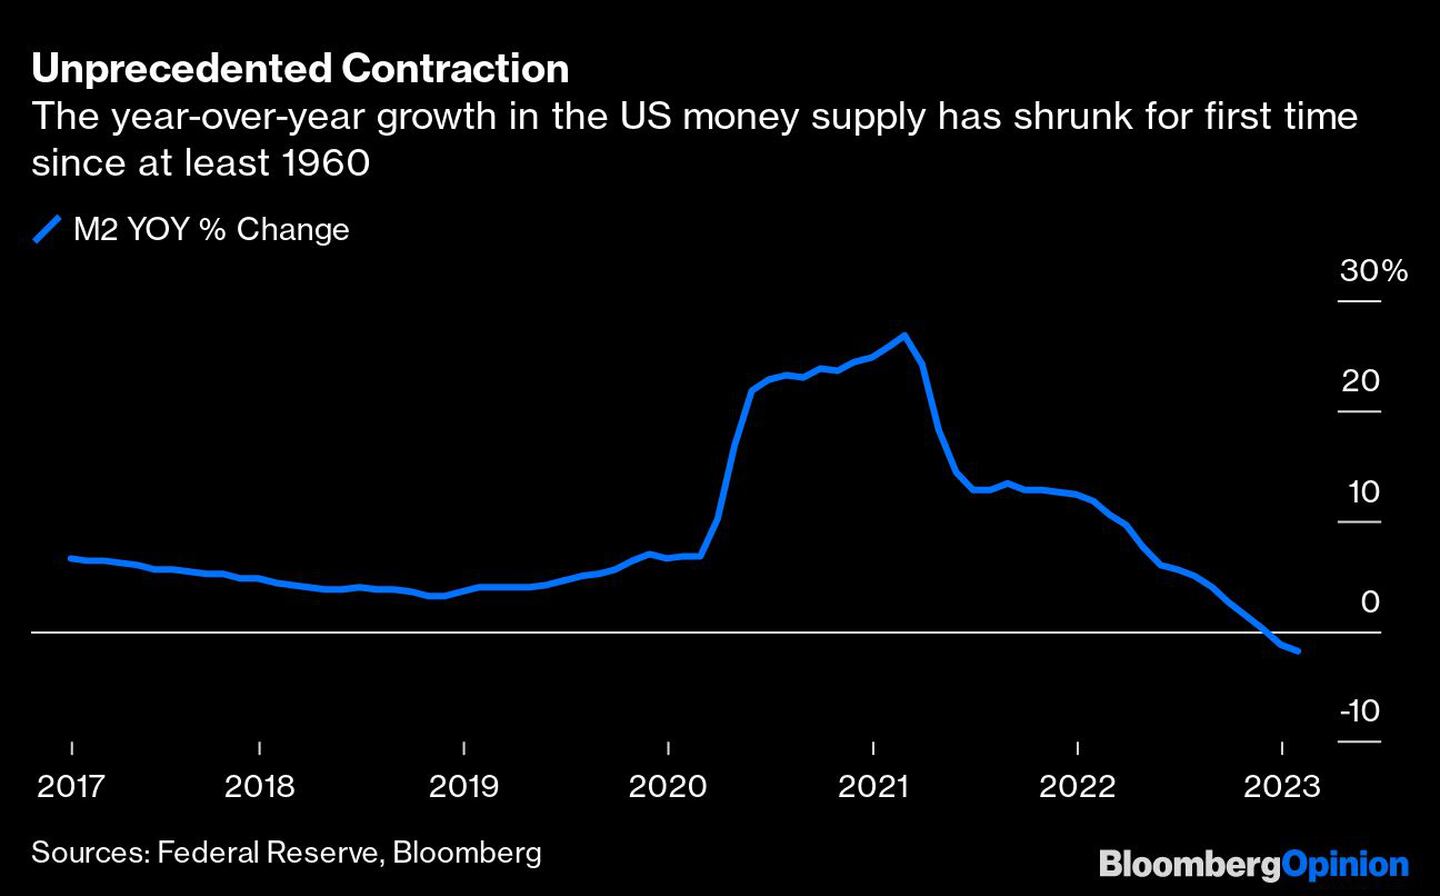 El crecimiento interanual de la masa monetaria estadounidense se ha reducido por primera vez desde al menos 1960dfd